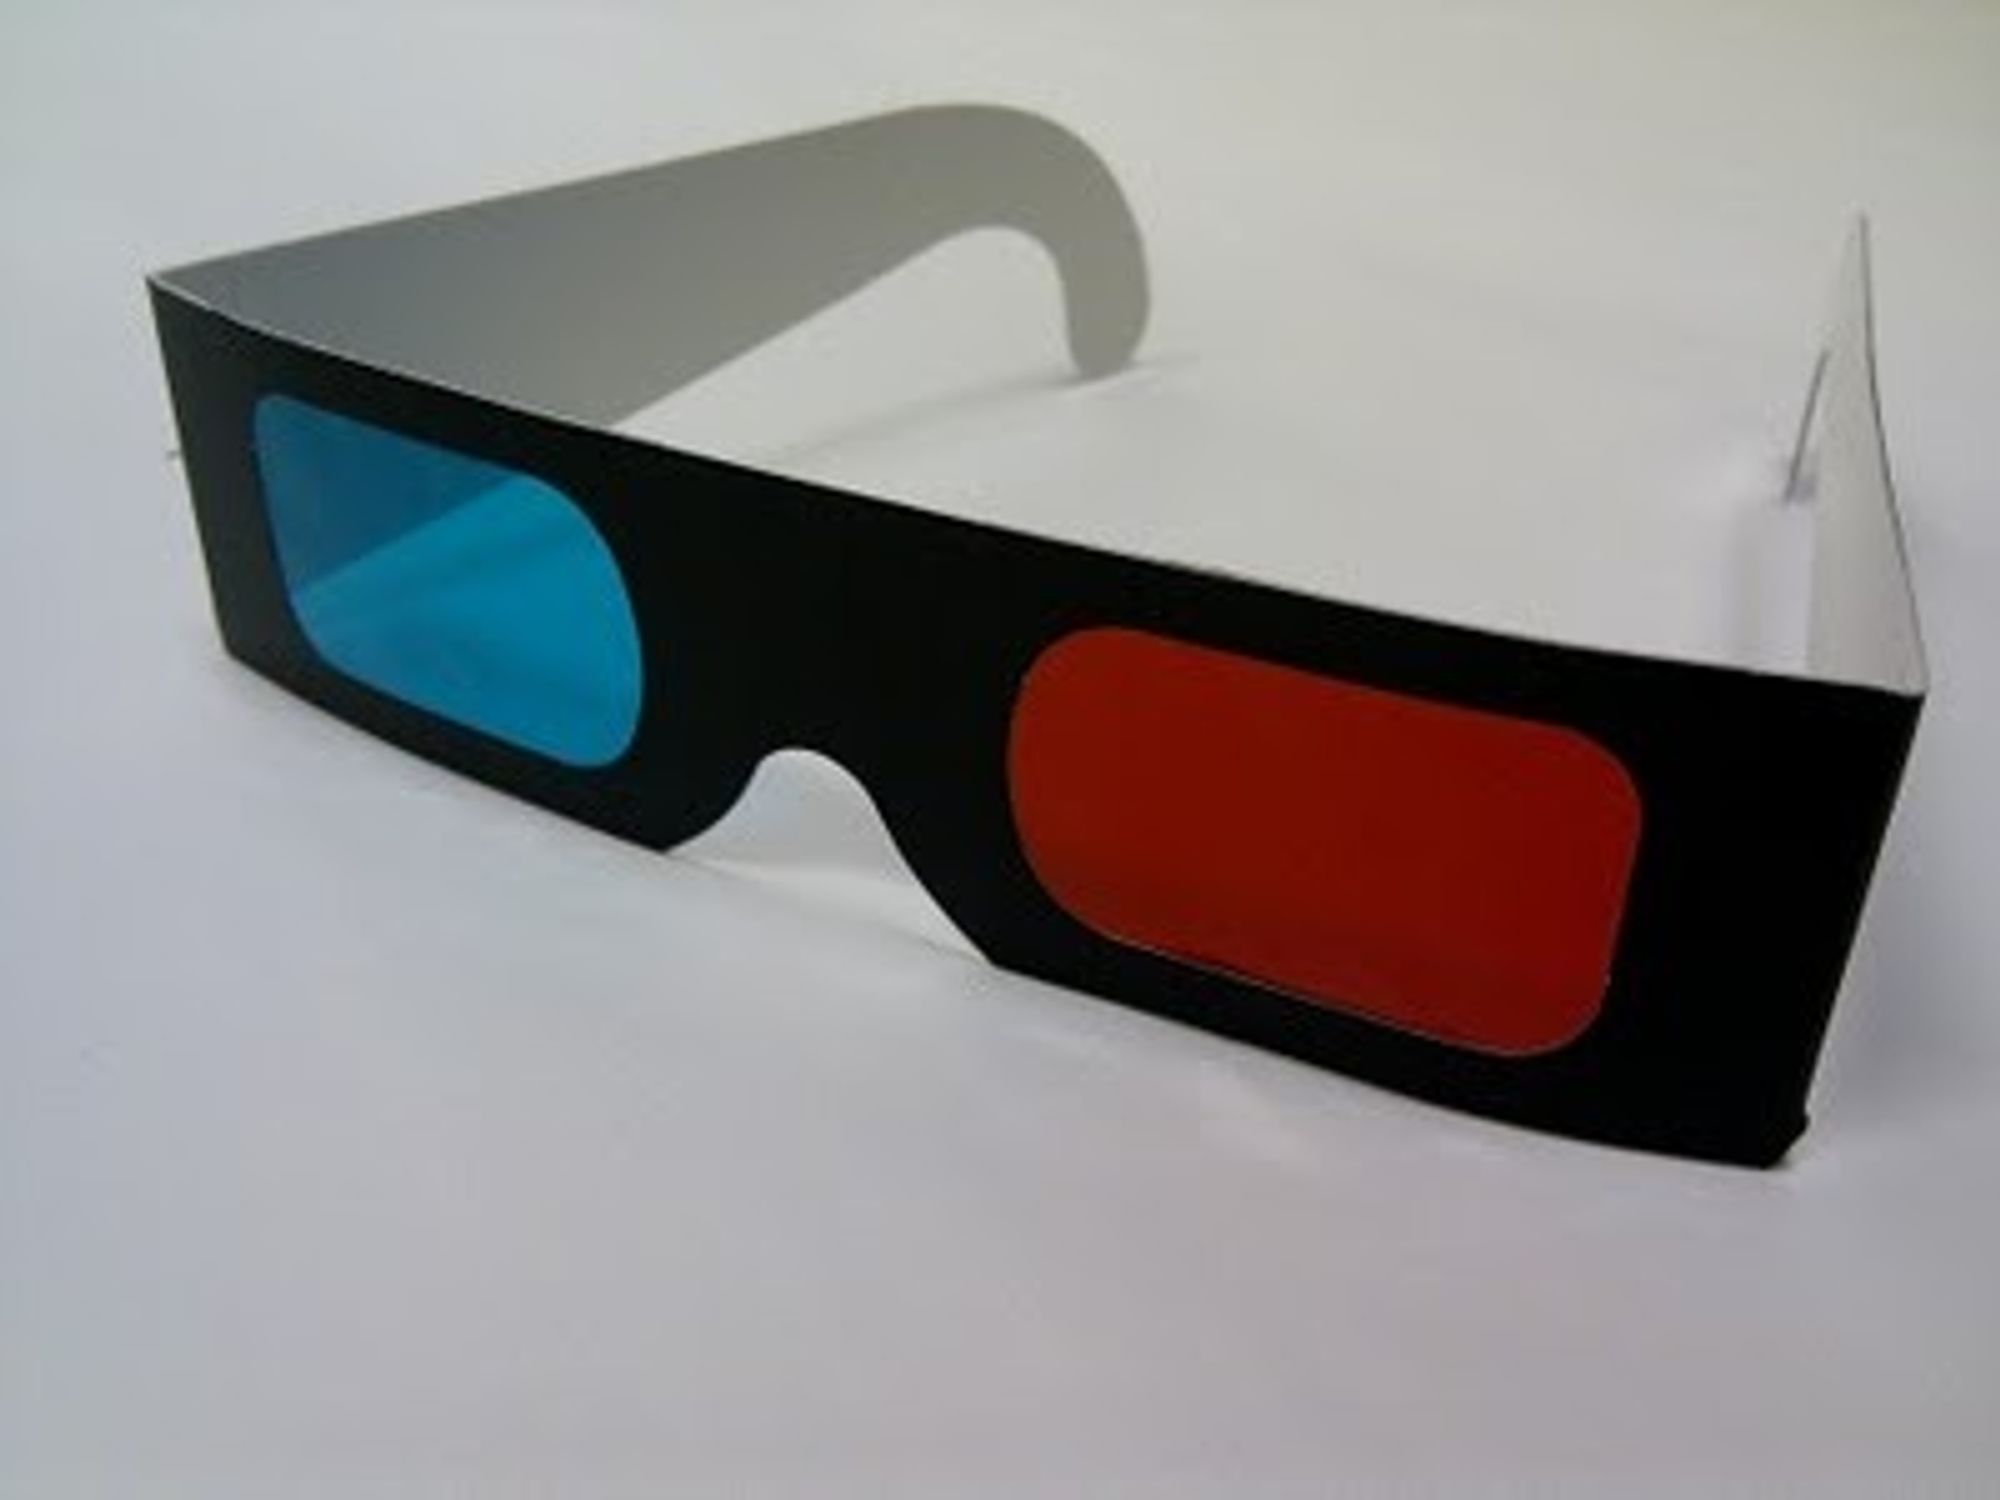 Helt enkle 3D-briller kan benyttes.